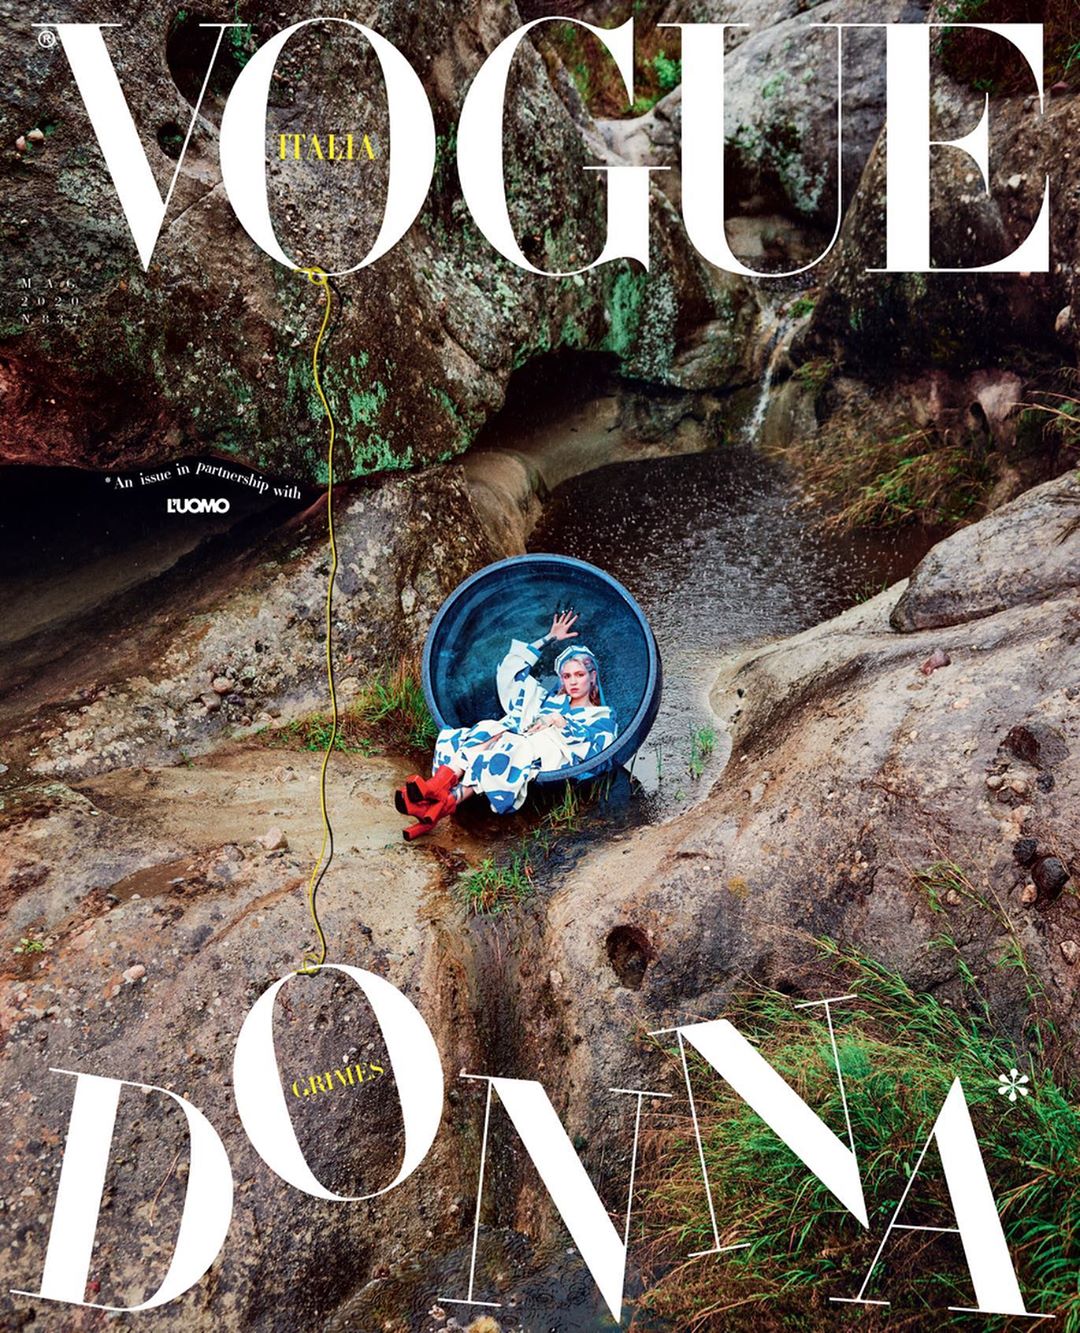 grimes Vogue Italia